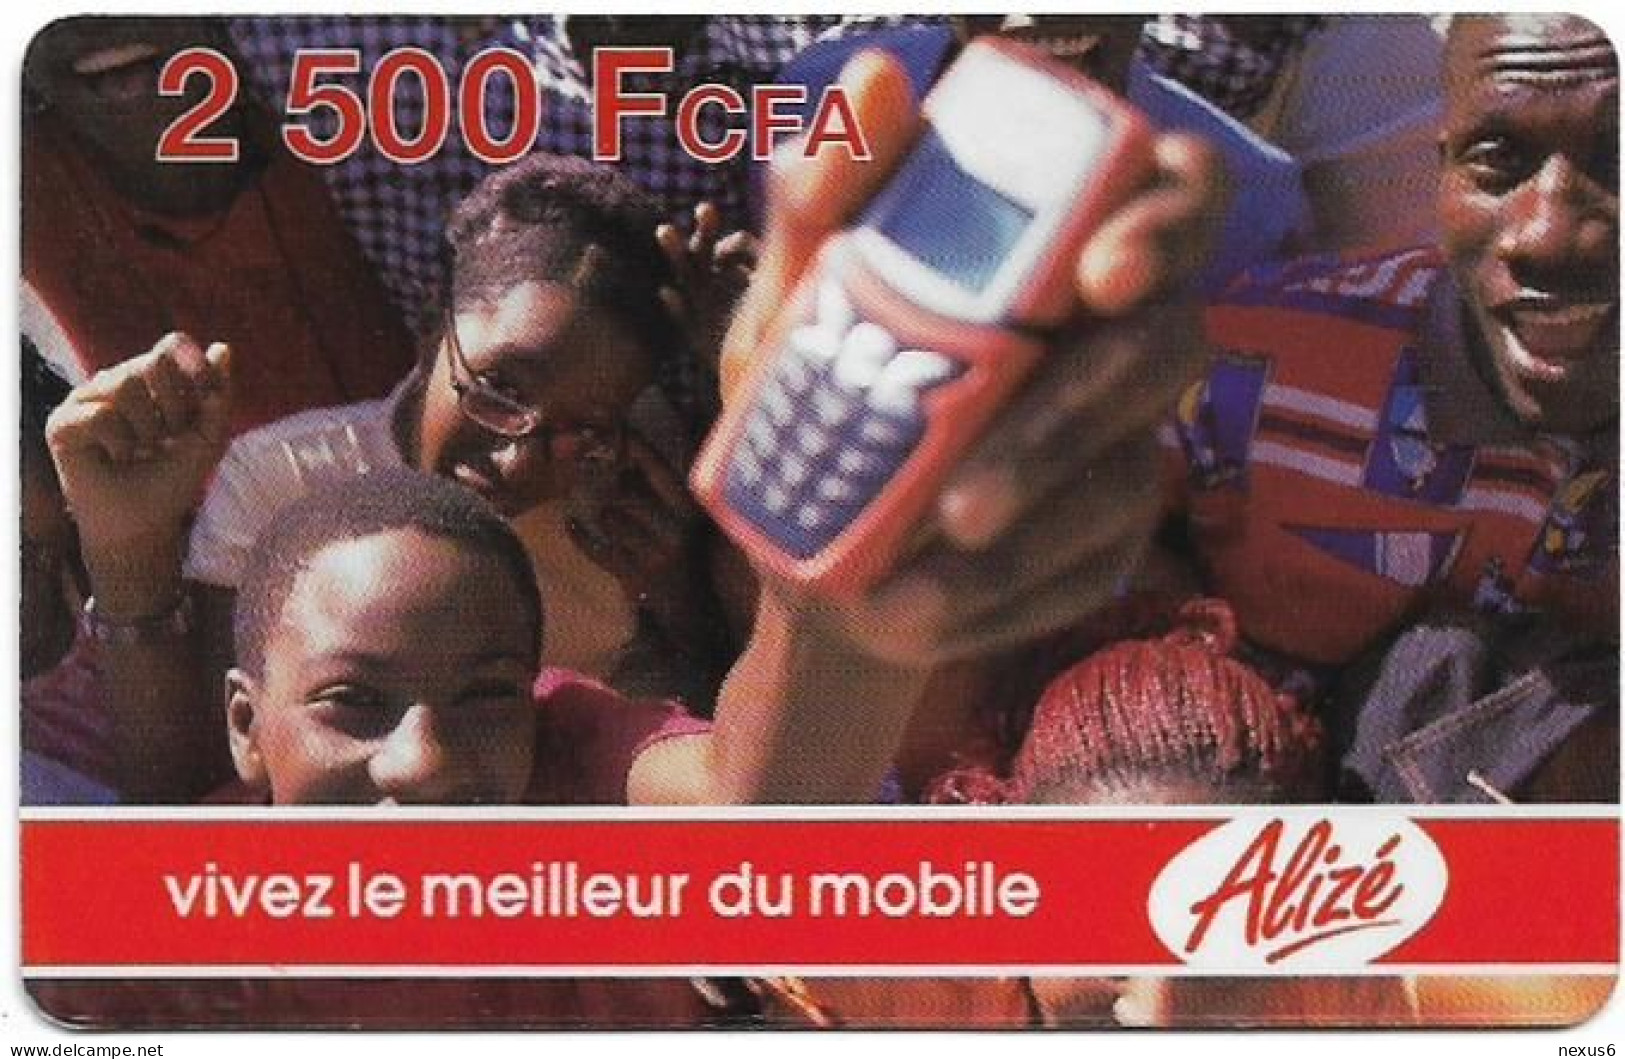 Senegal - Alizé - Vivez Le Meilleur Du Mobile - Crowd And Mobile, Reverse 2, GSM Refill 2.500CFA, Used - Senegal